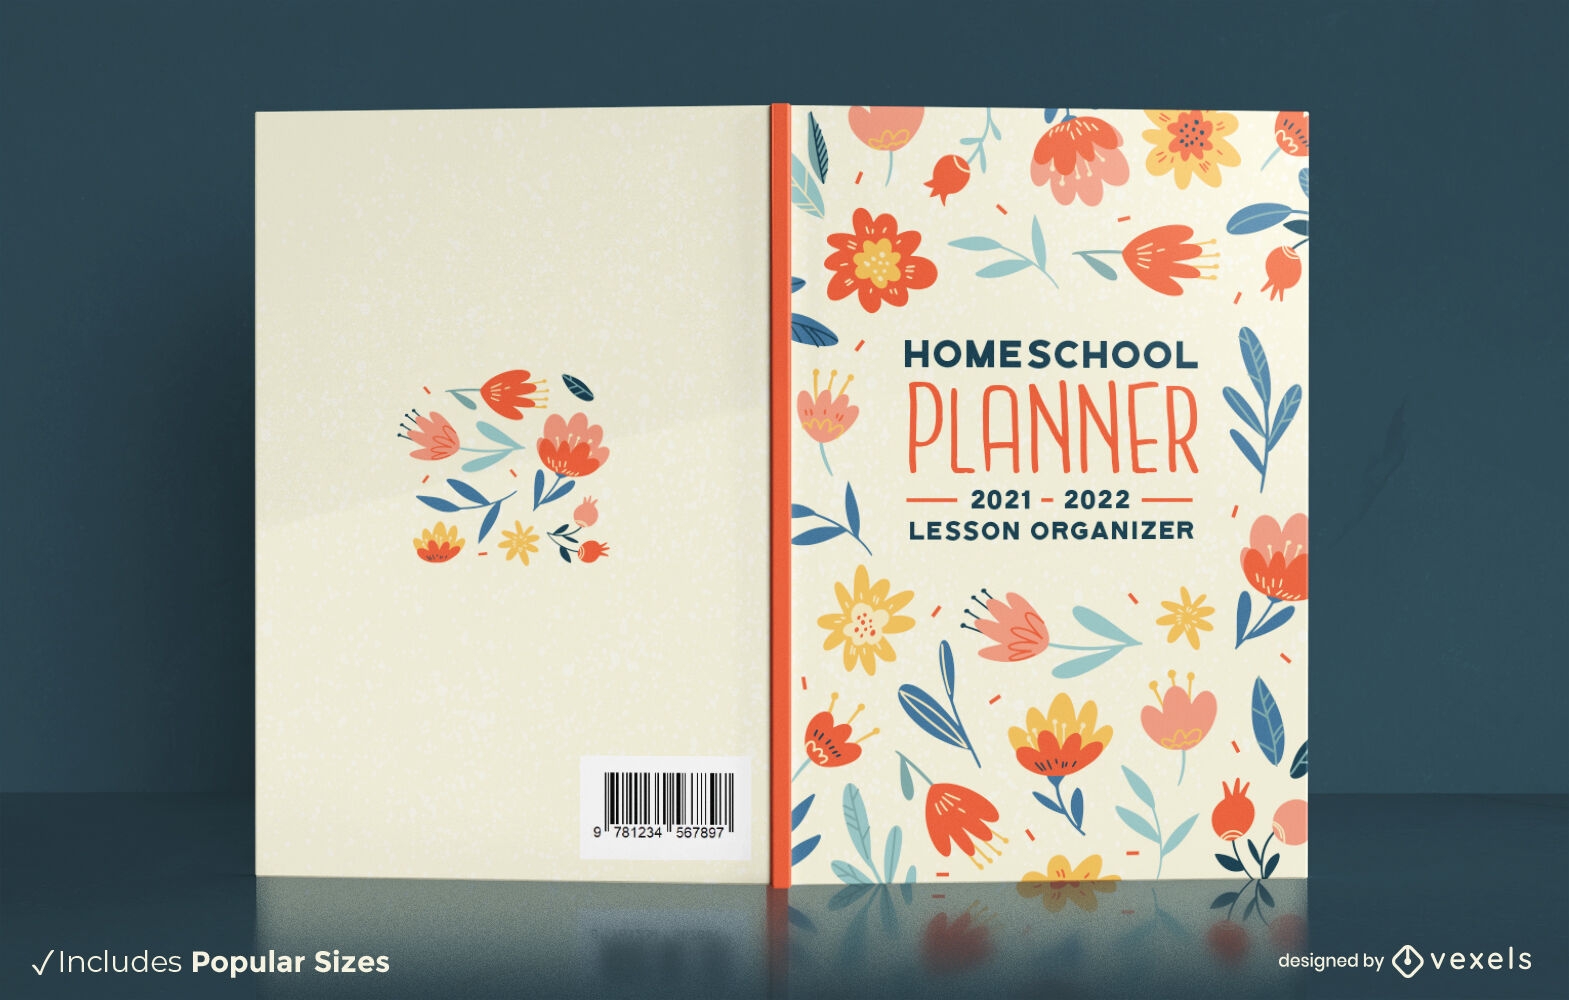 Diseño floral de la portada del libro del planificador de educación en el hogar